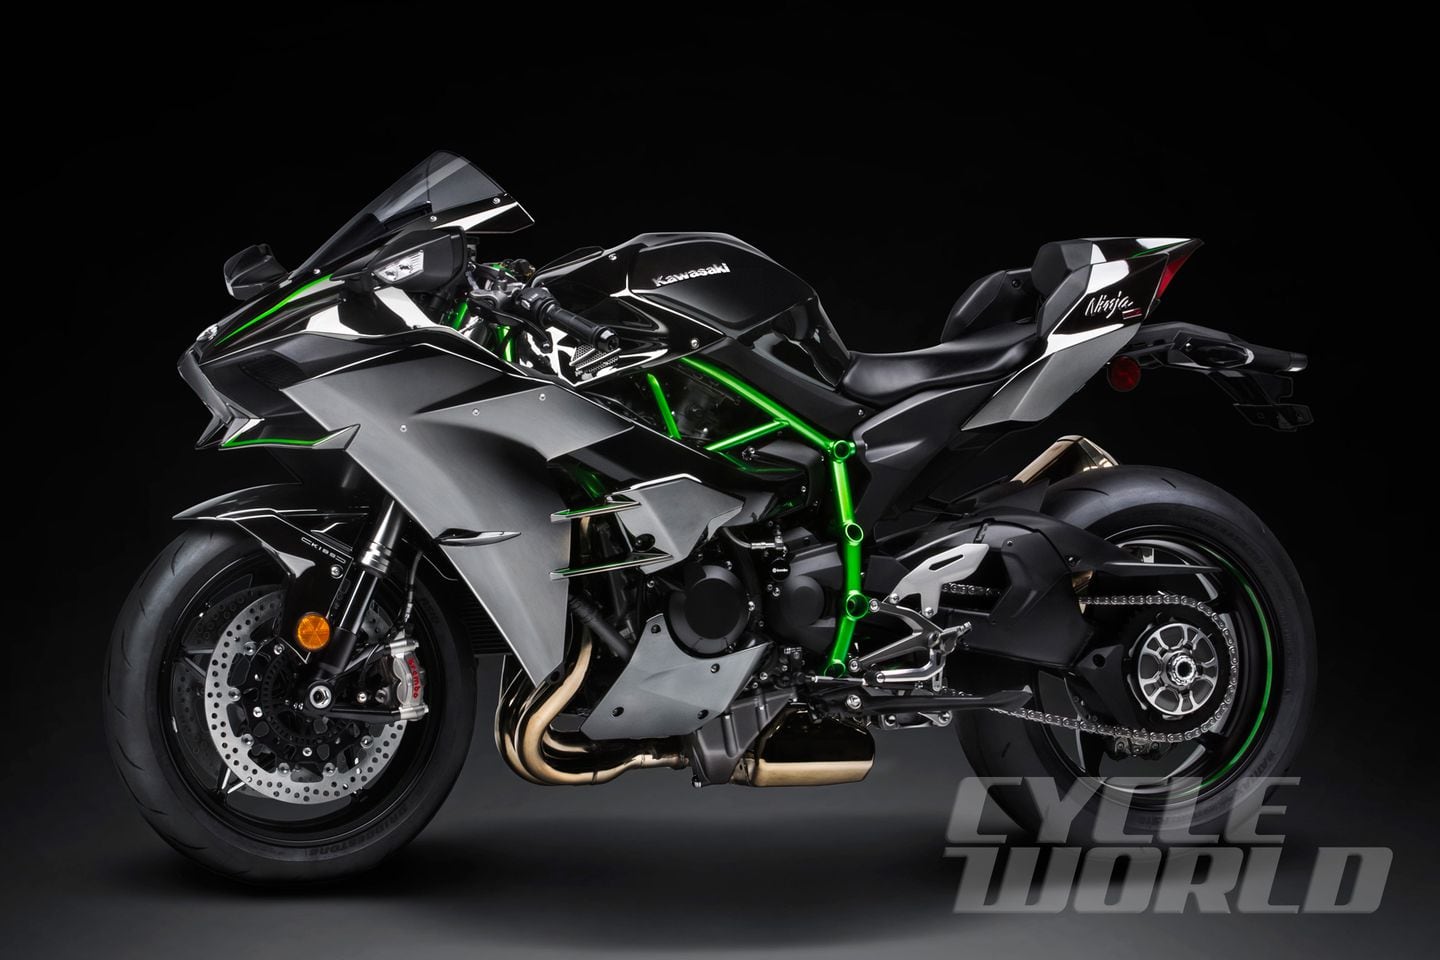 Kawasaki Ninja H2 Streetbike First Look Motorcycle Review- Photos | Cycle  World